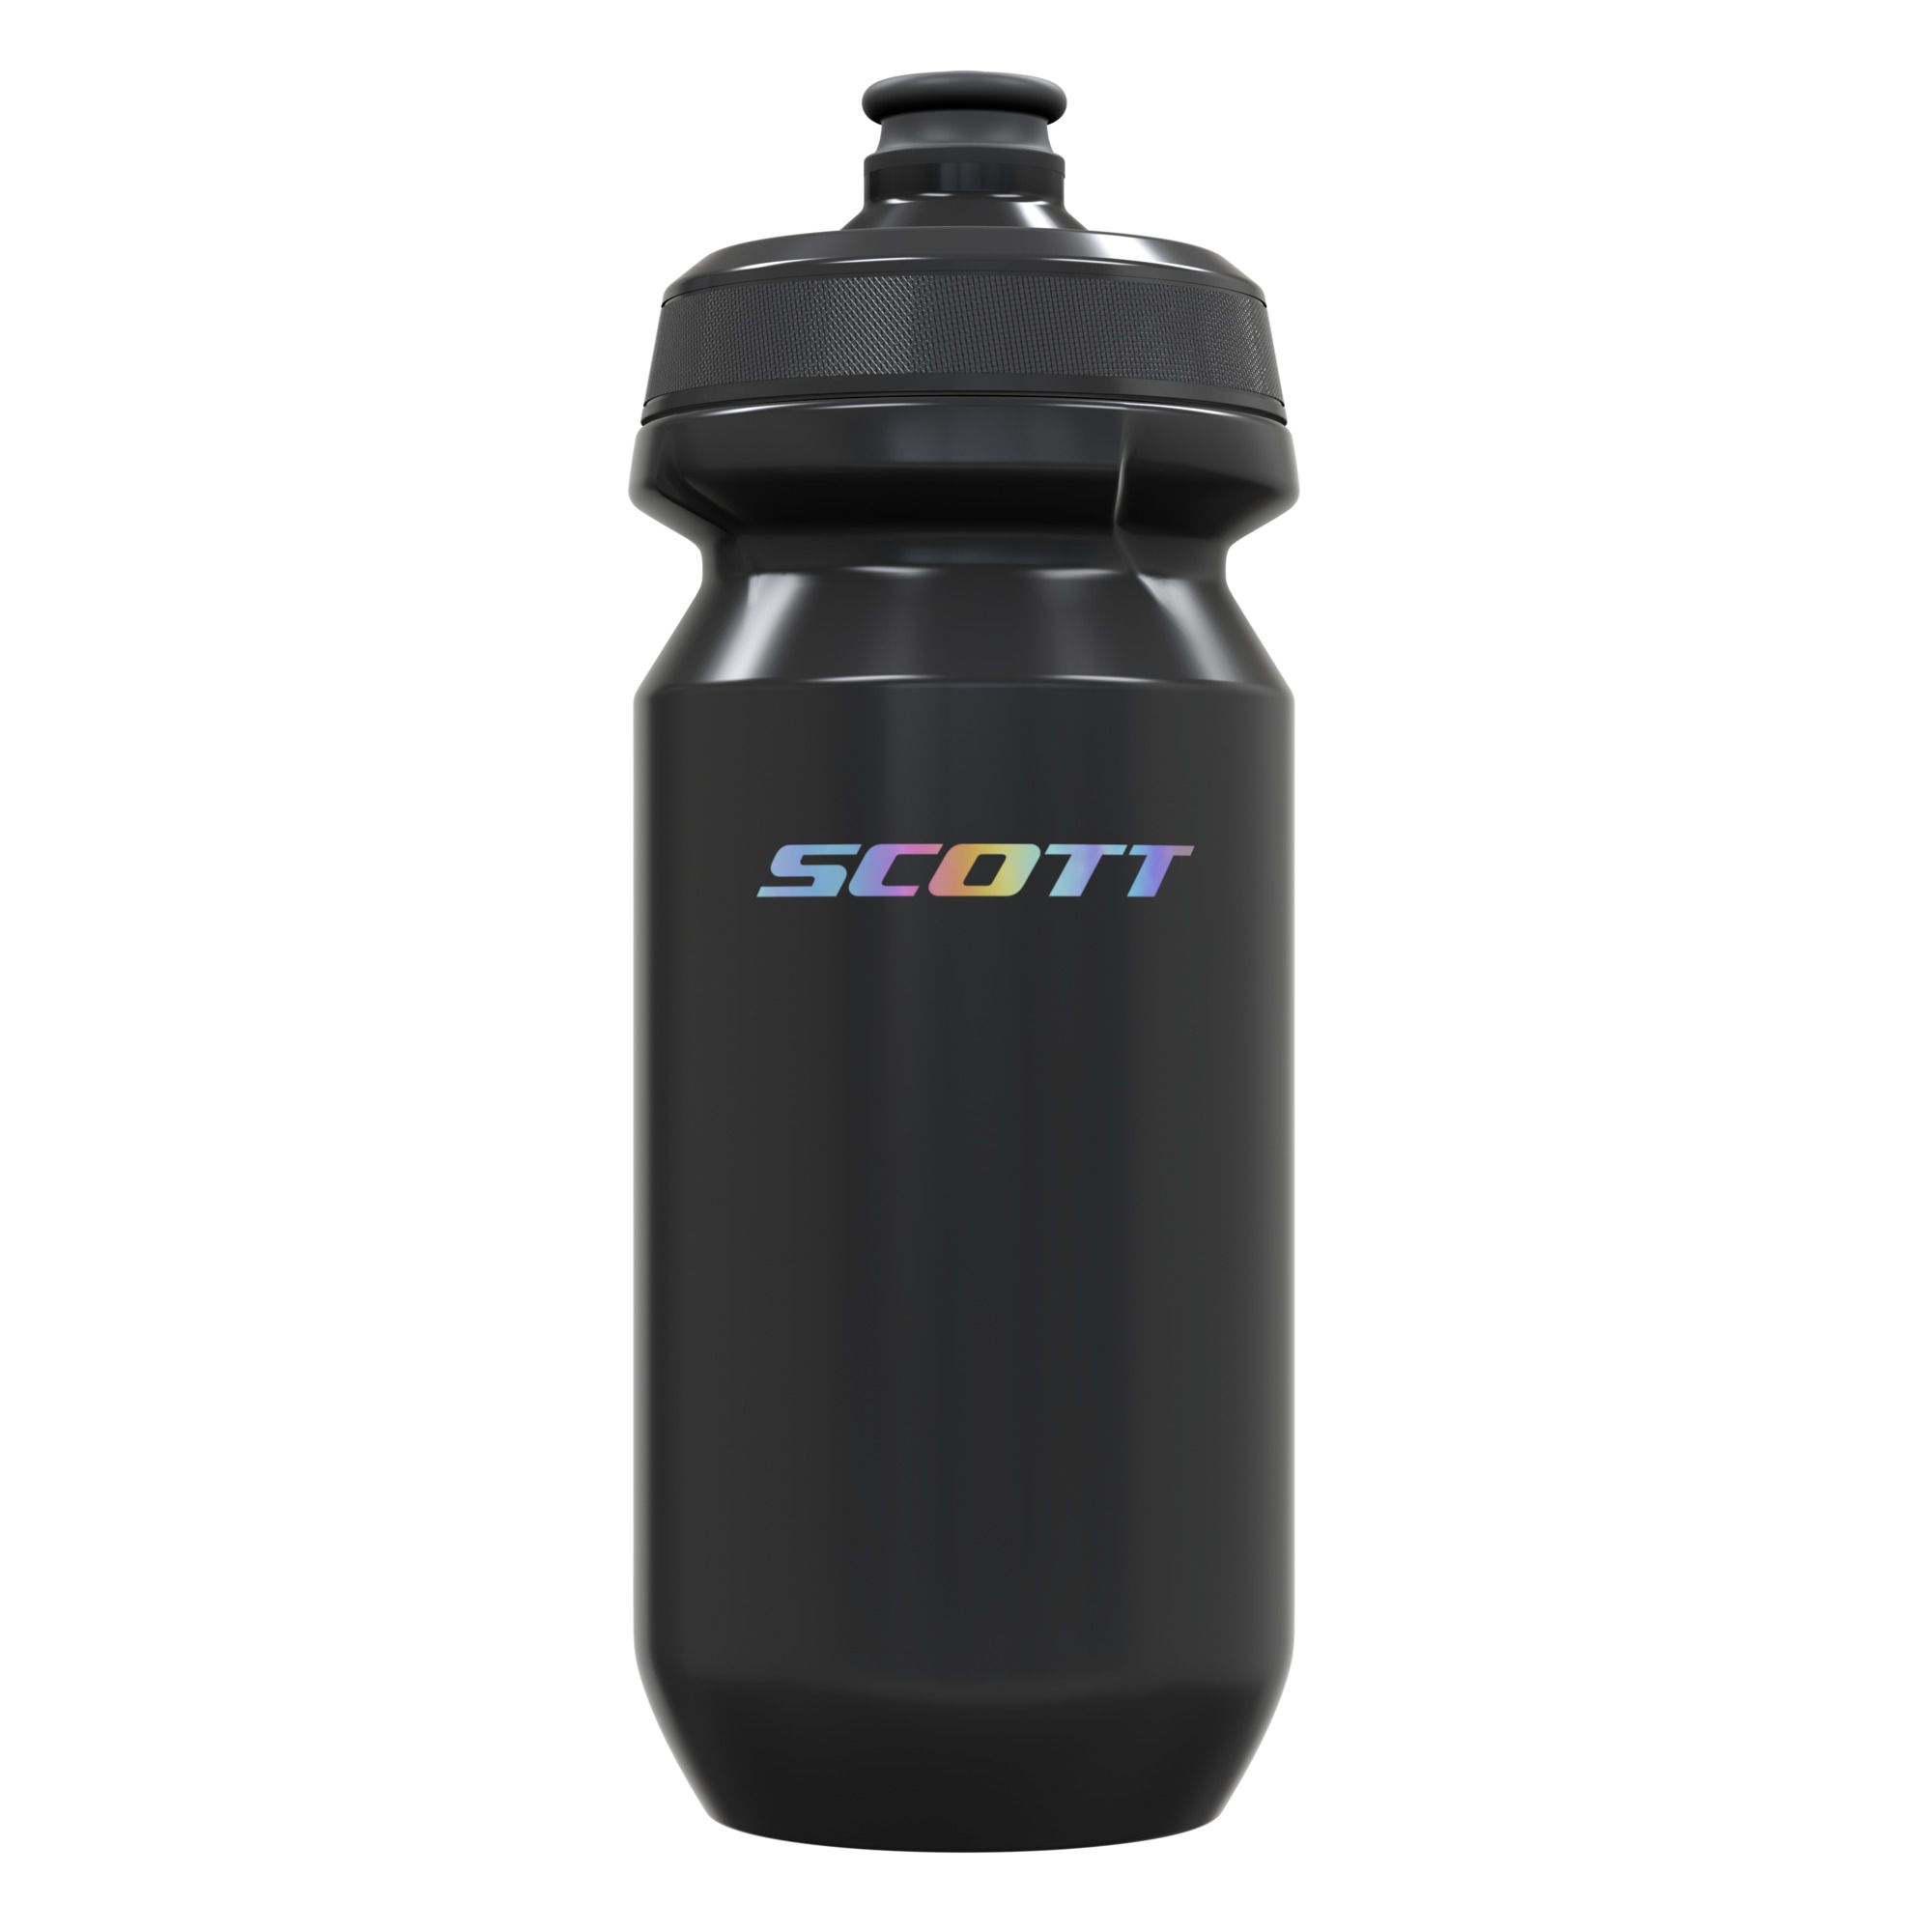 SCOTT Premium ICON G5 PAK-10 Water bottle